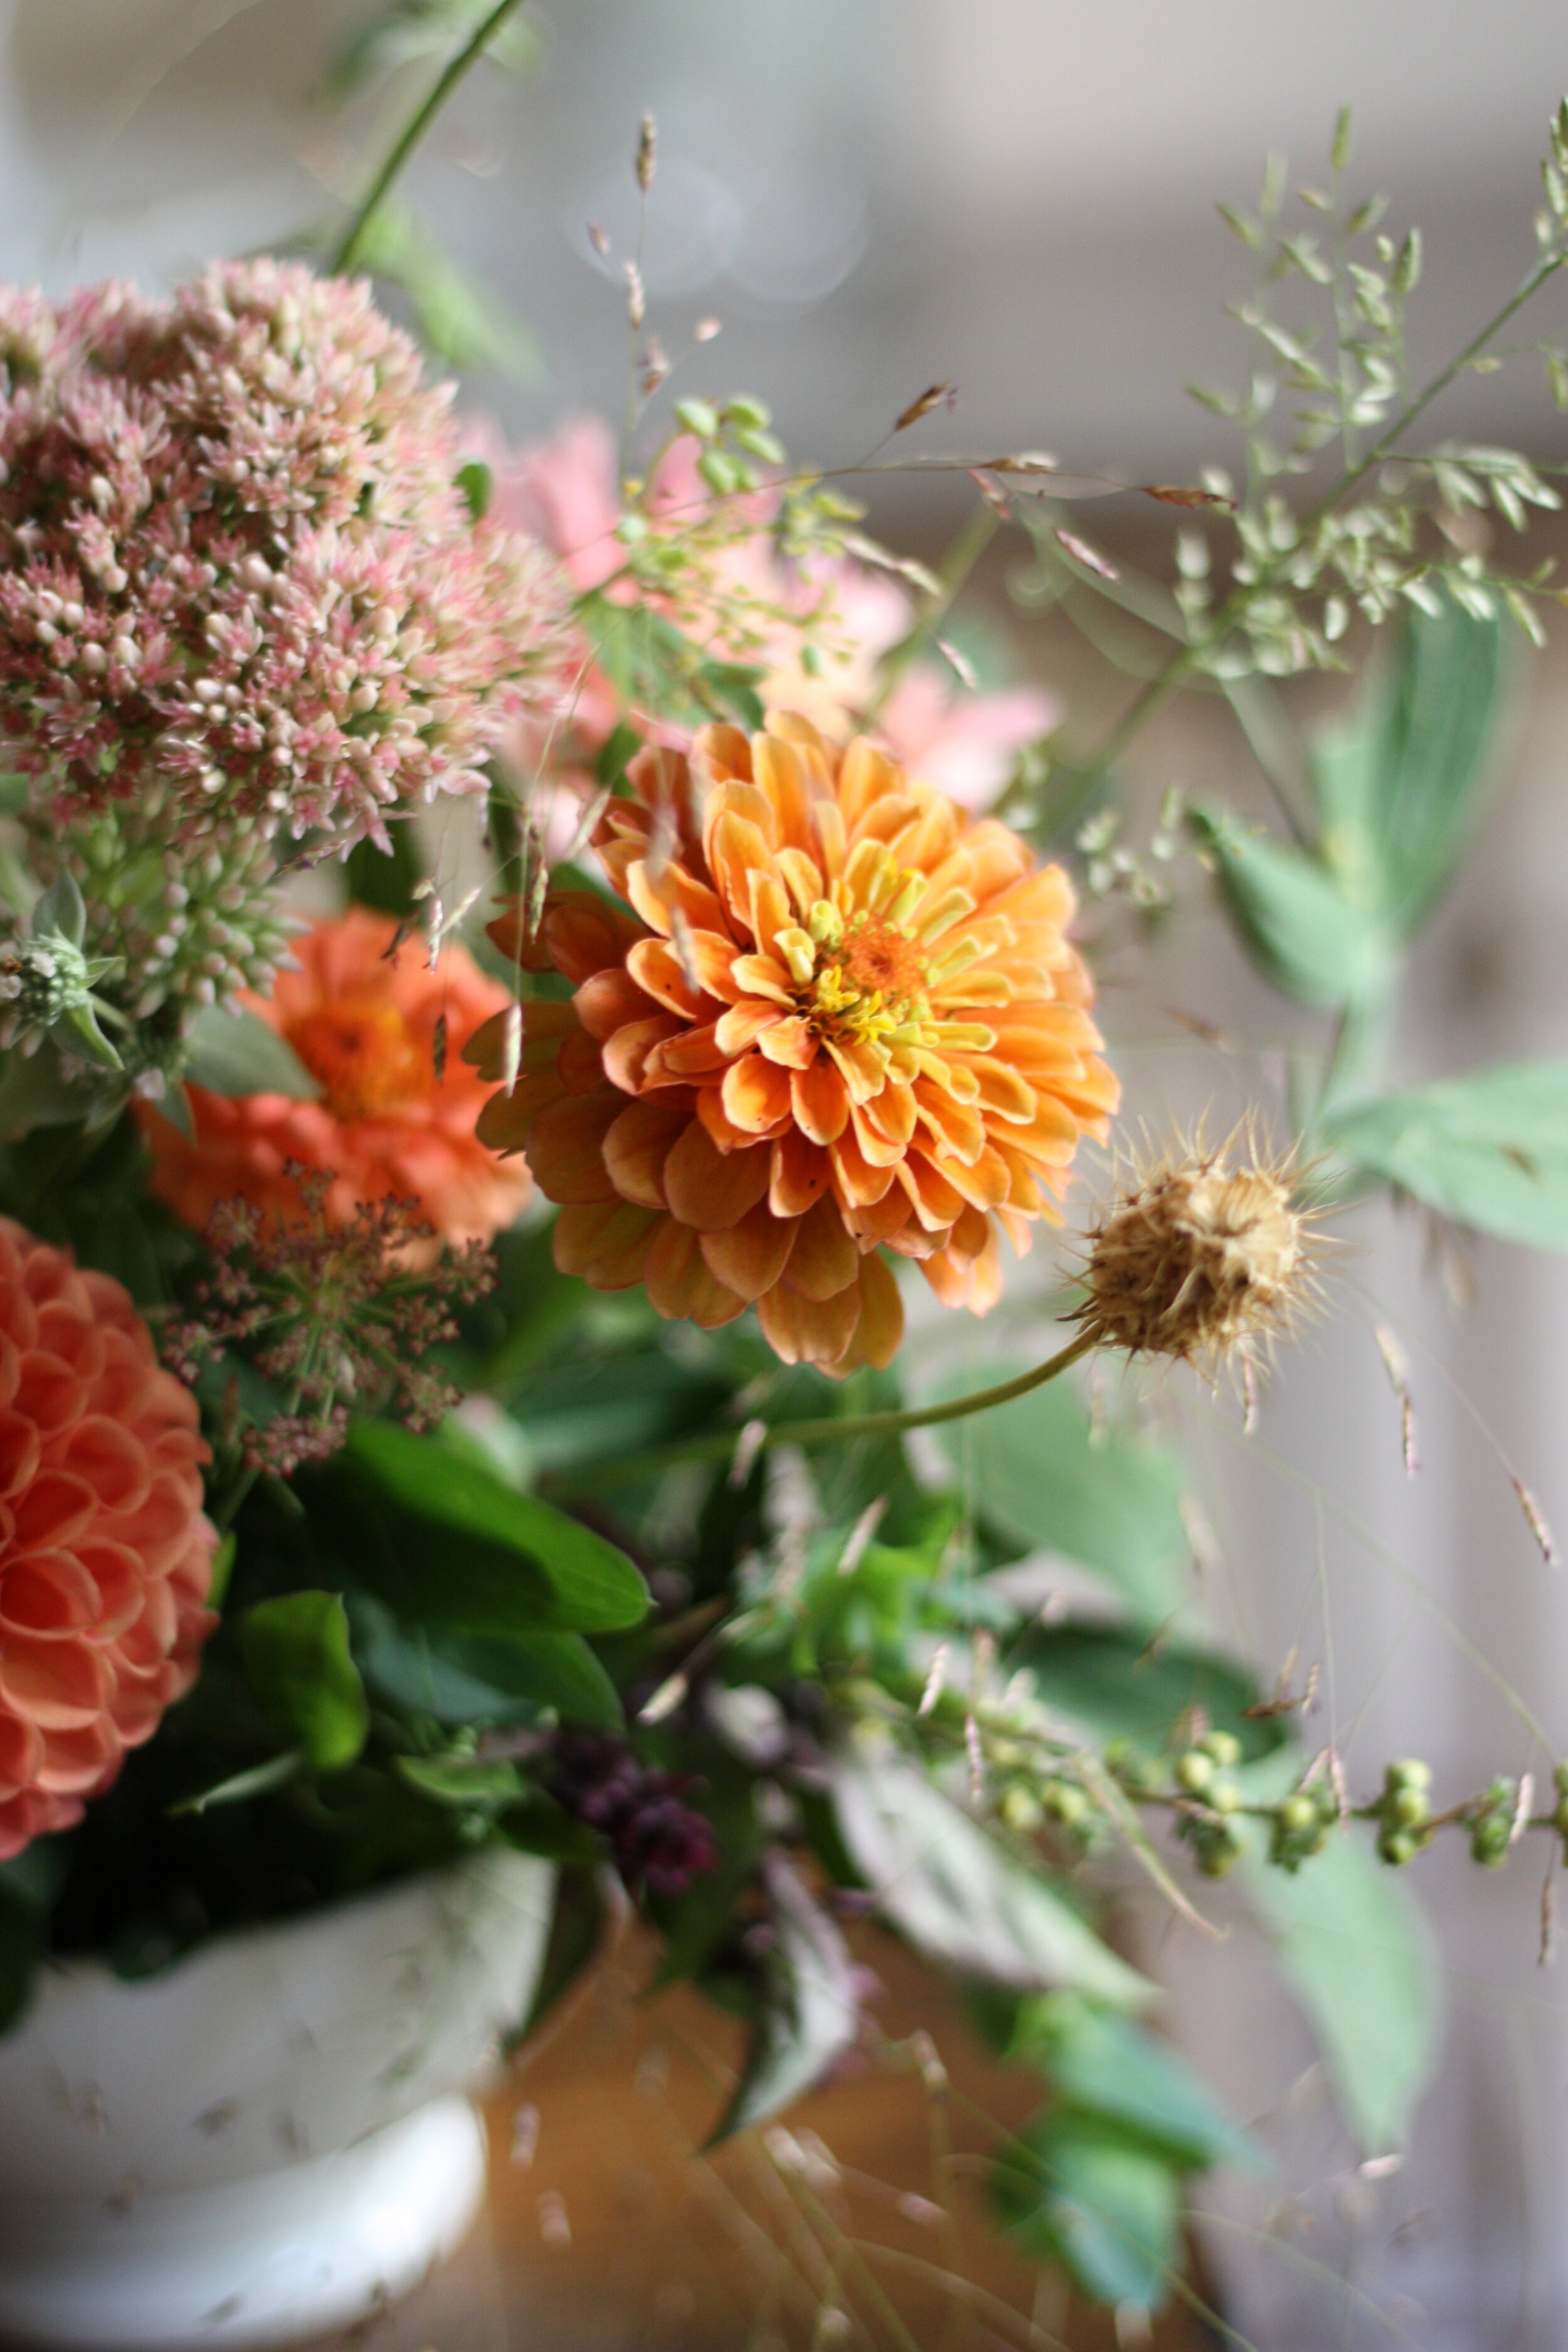 How to Grow Basil for Floral Design — the kokoro garden